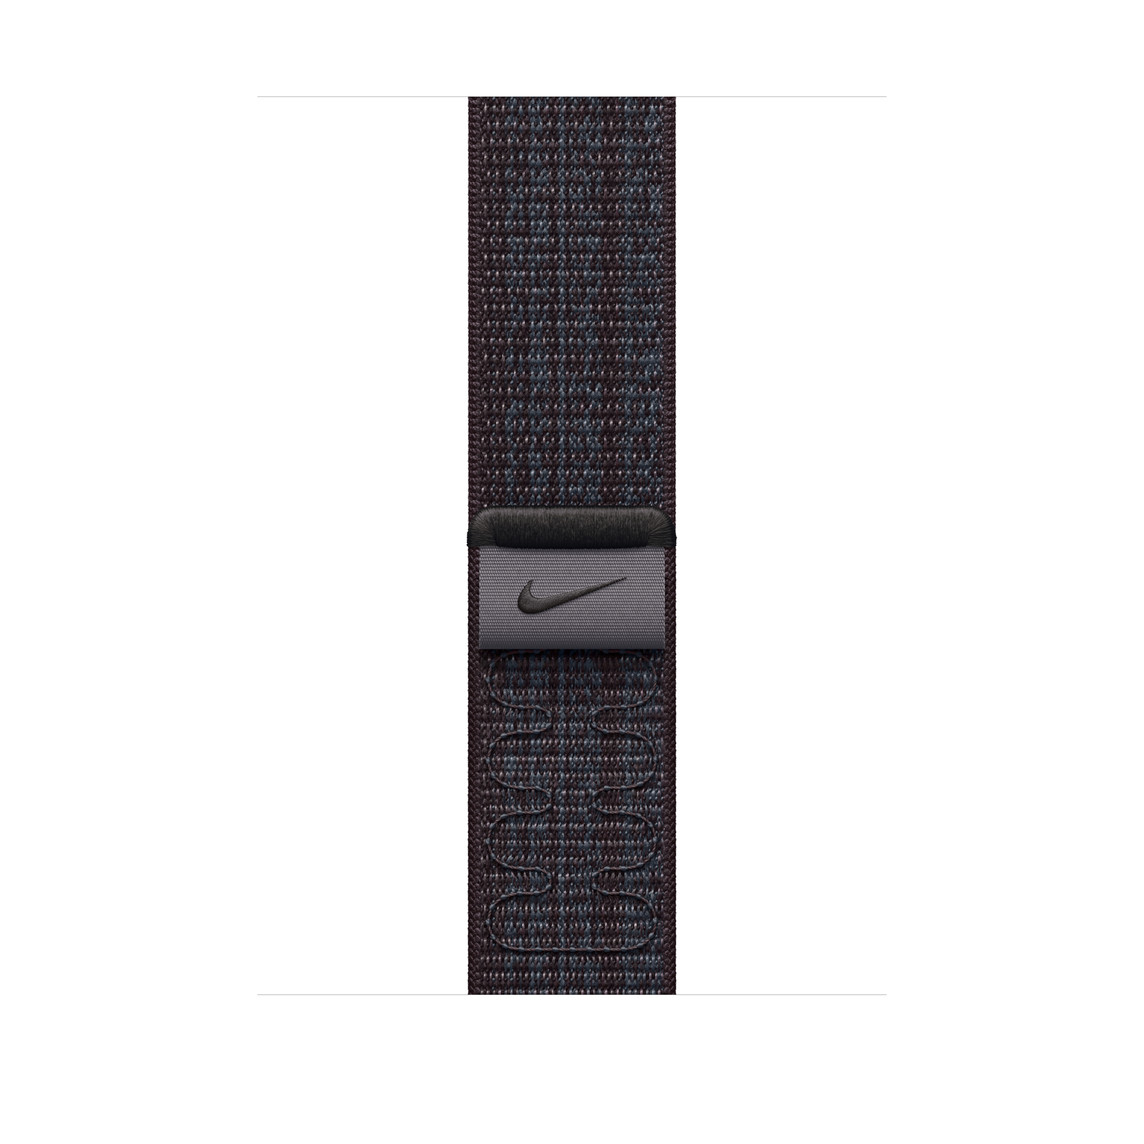 Correa loop deportiva negra/azul hecha de nylon tejido con el Swoosh de Nike y cierre adhesivo ajustable